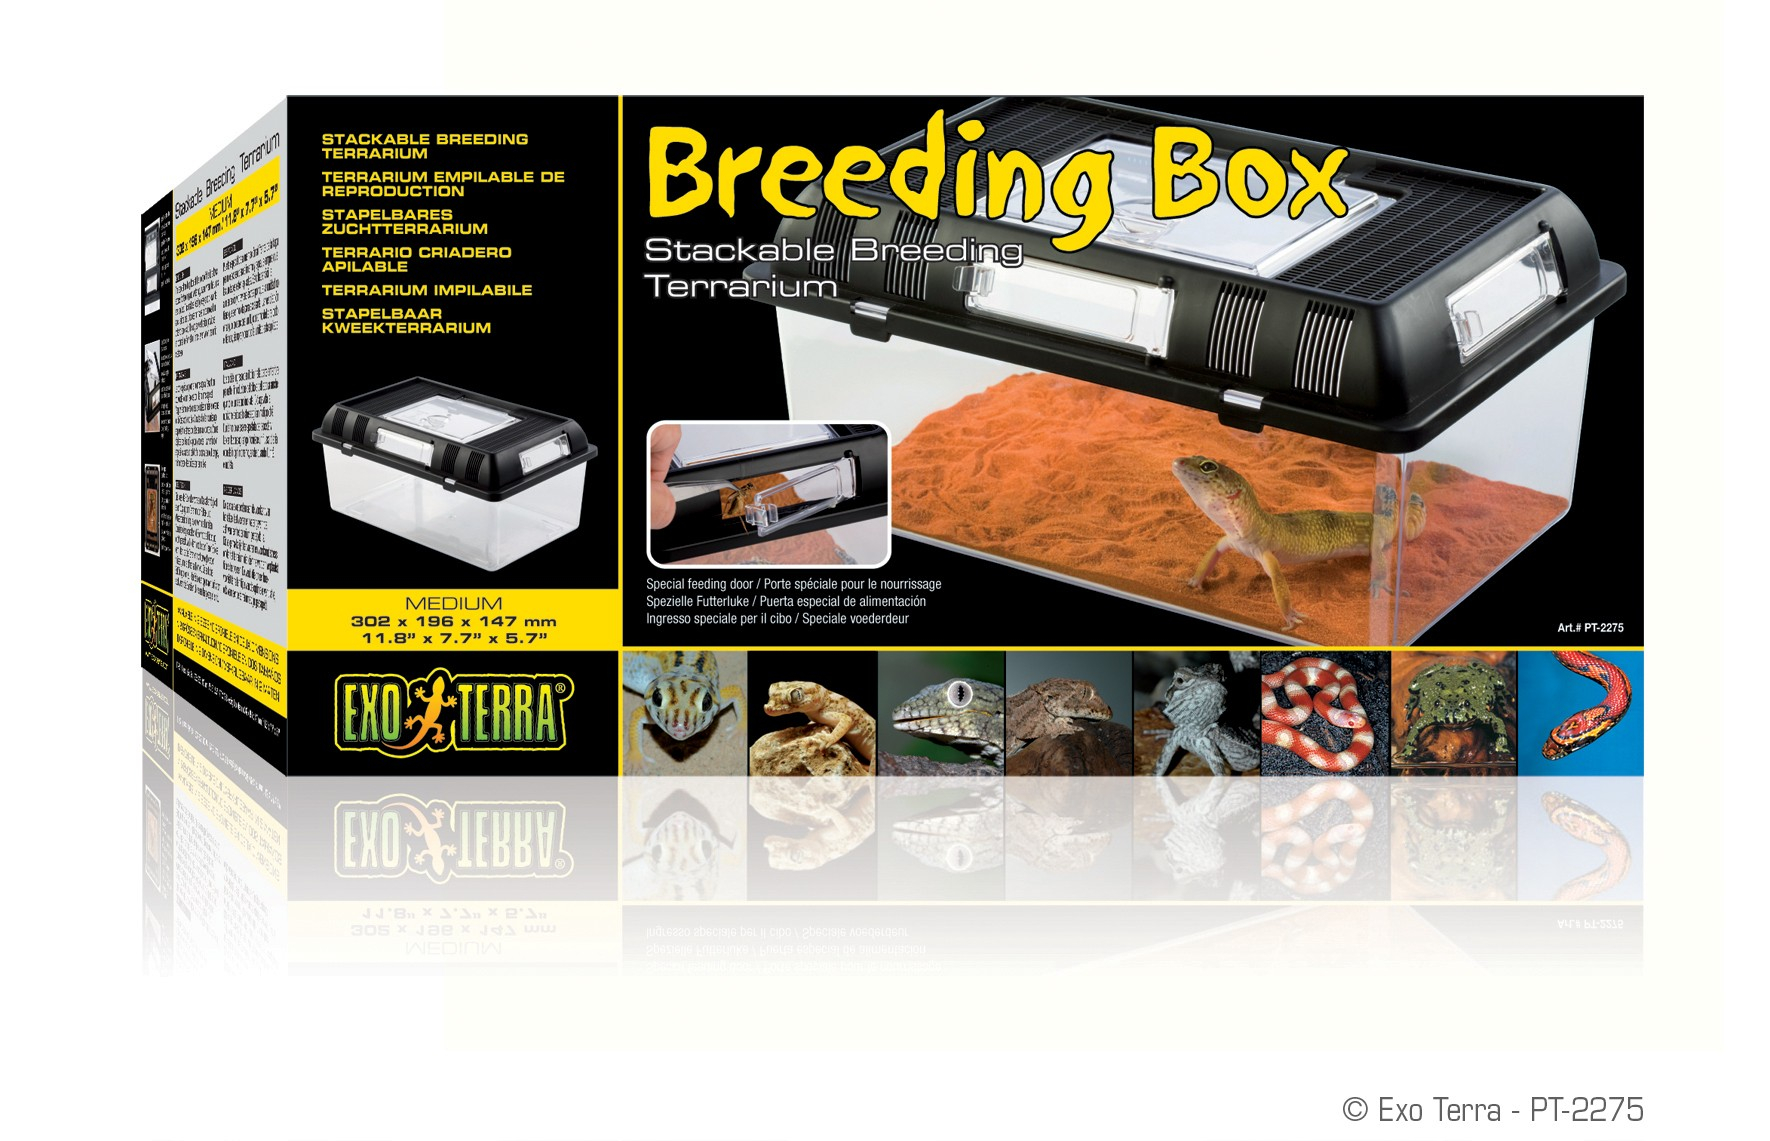 Caixa de criação para répteis Exo Terra Breeding Box - Vários tamanhos disponíveis